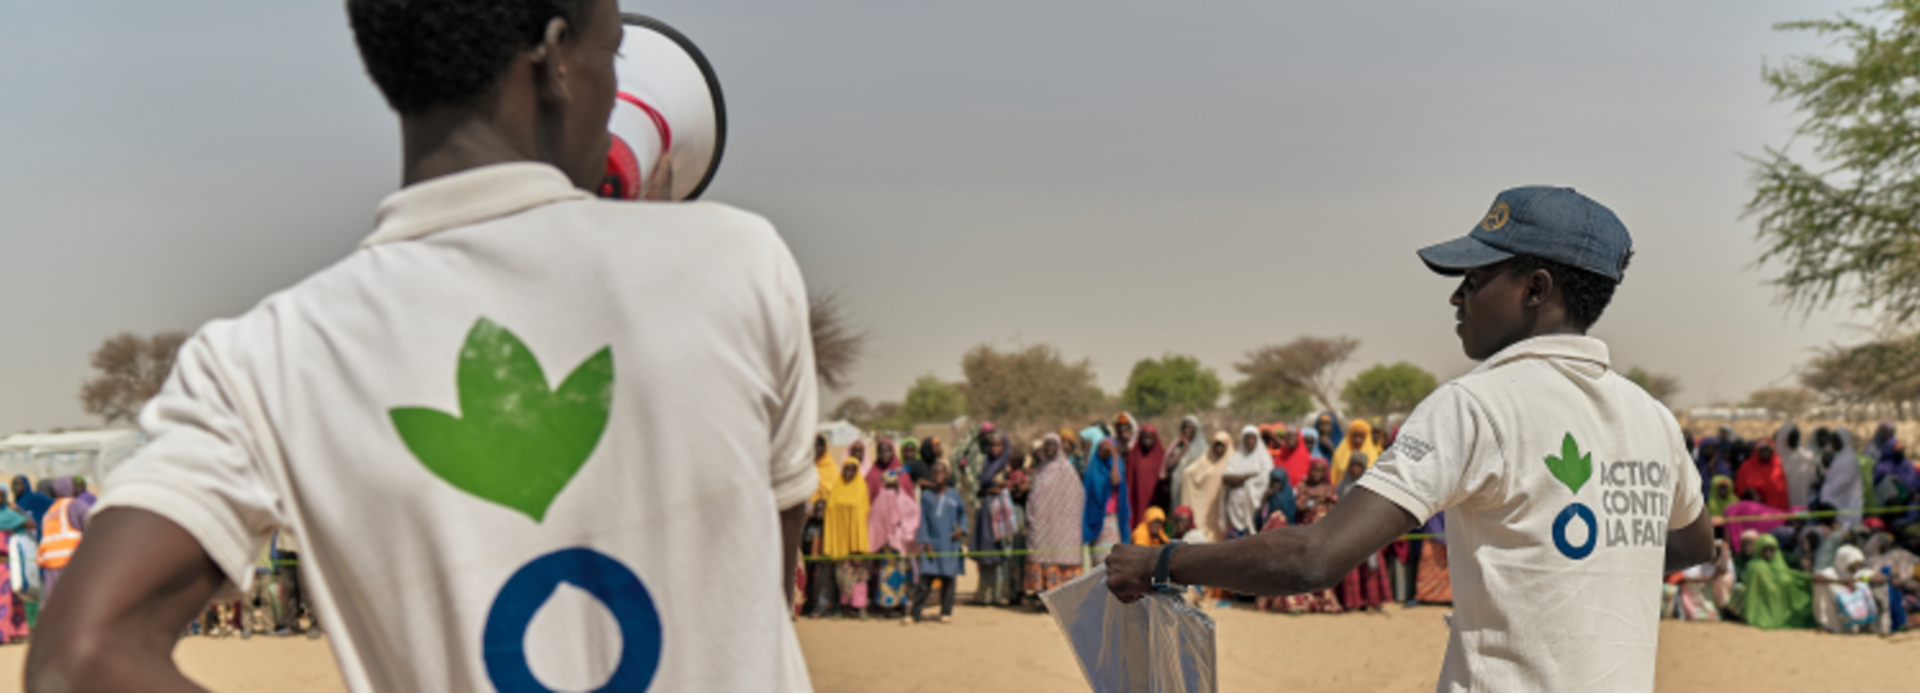 Mitarbeiter von Aktion gegen den Hunger in Tschad